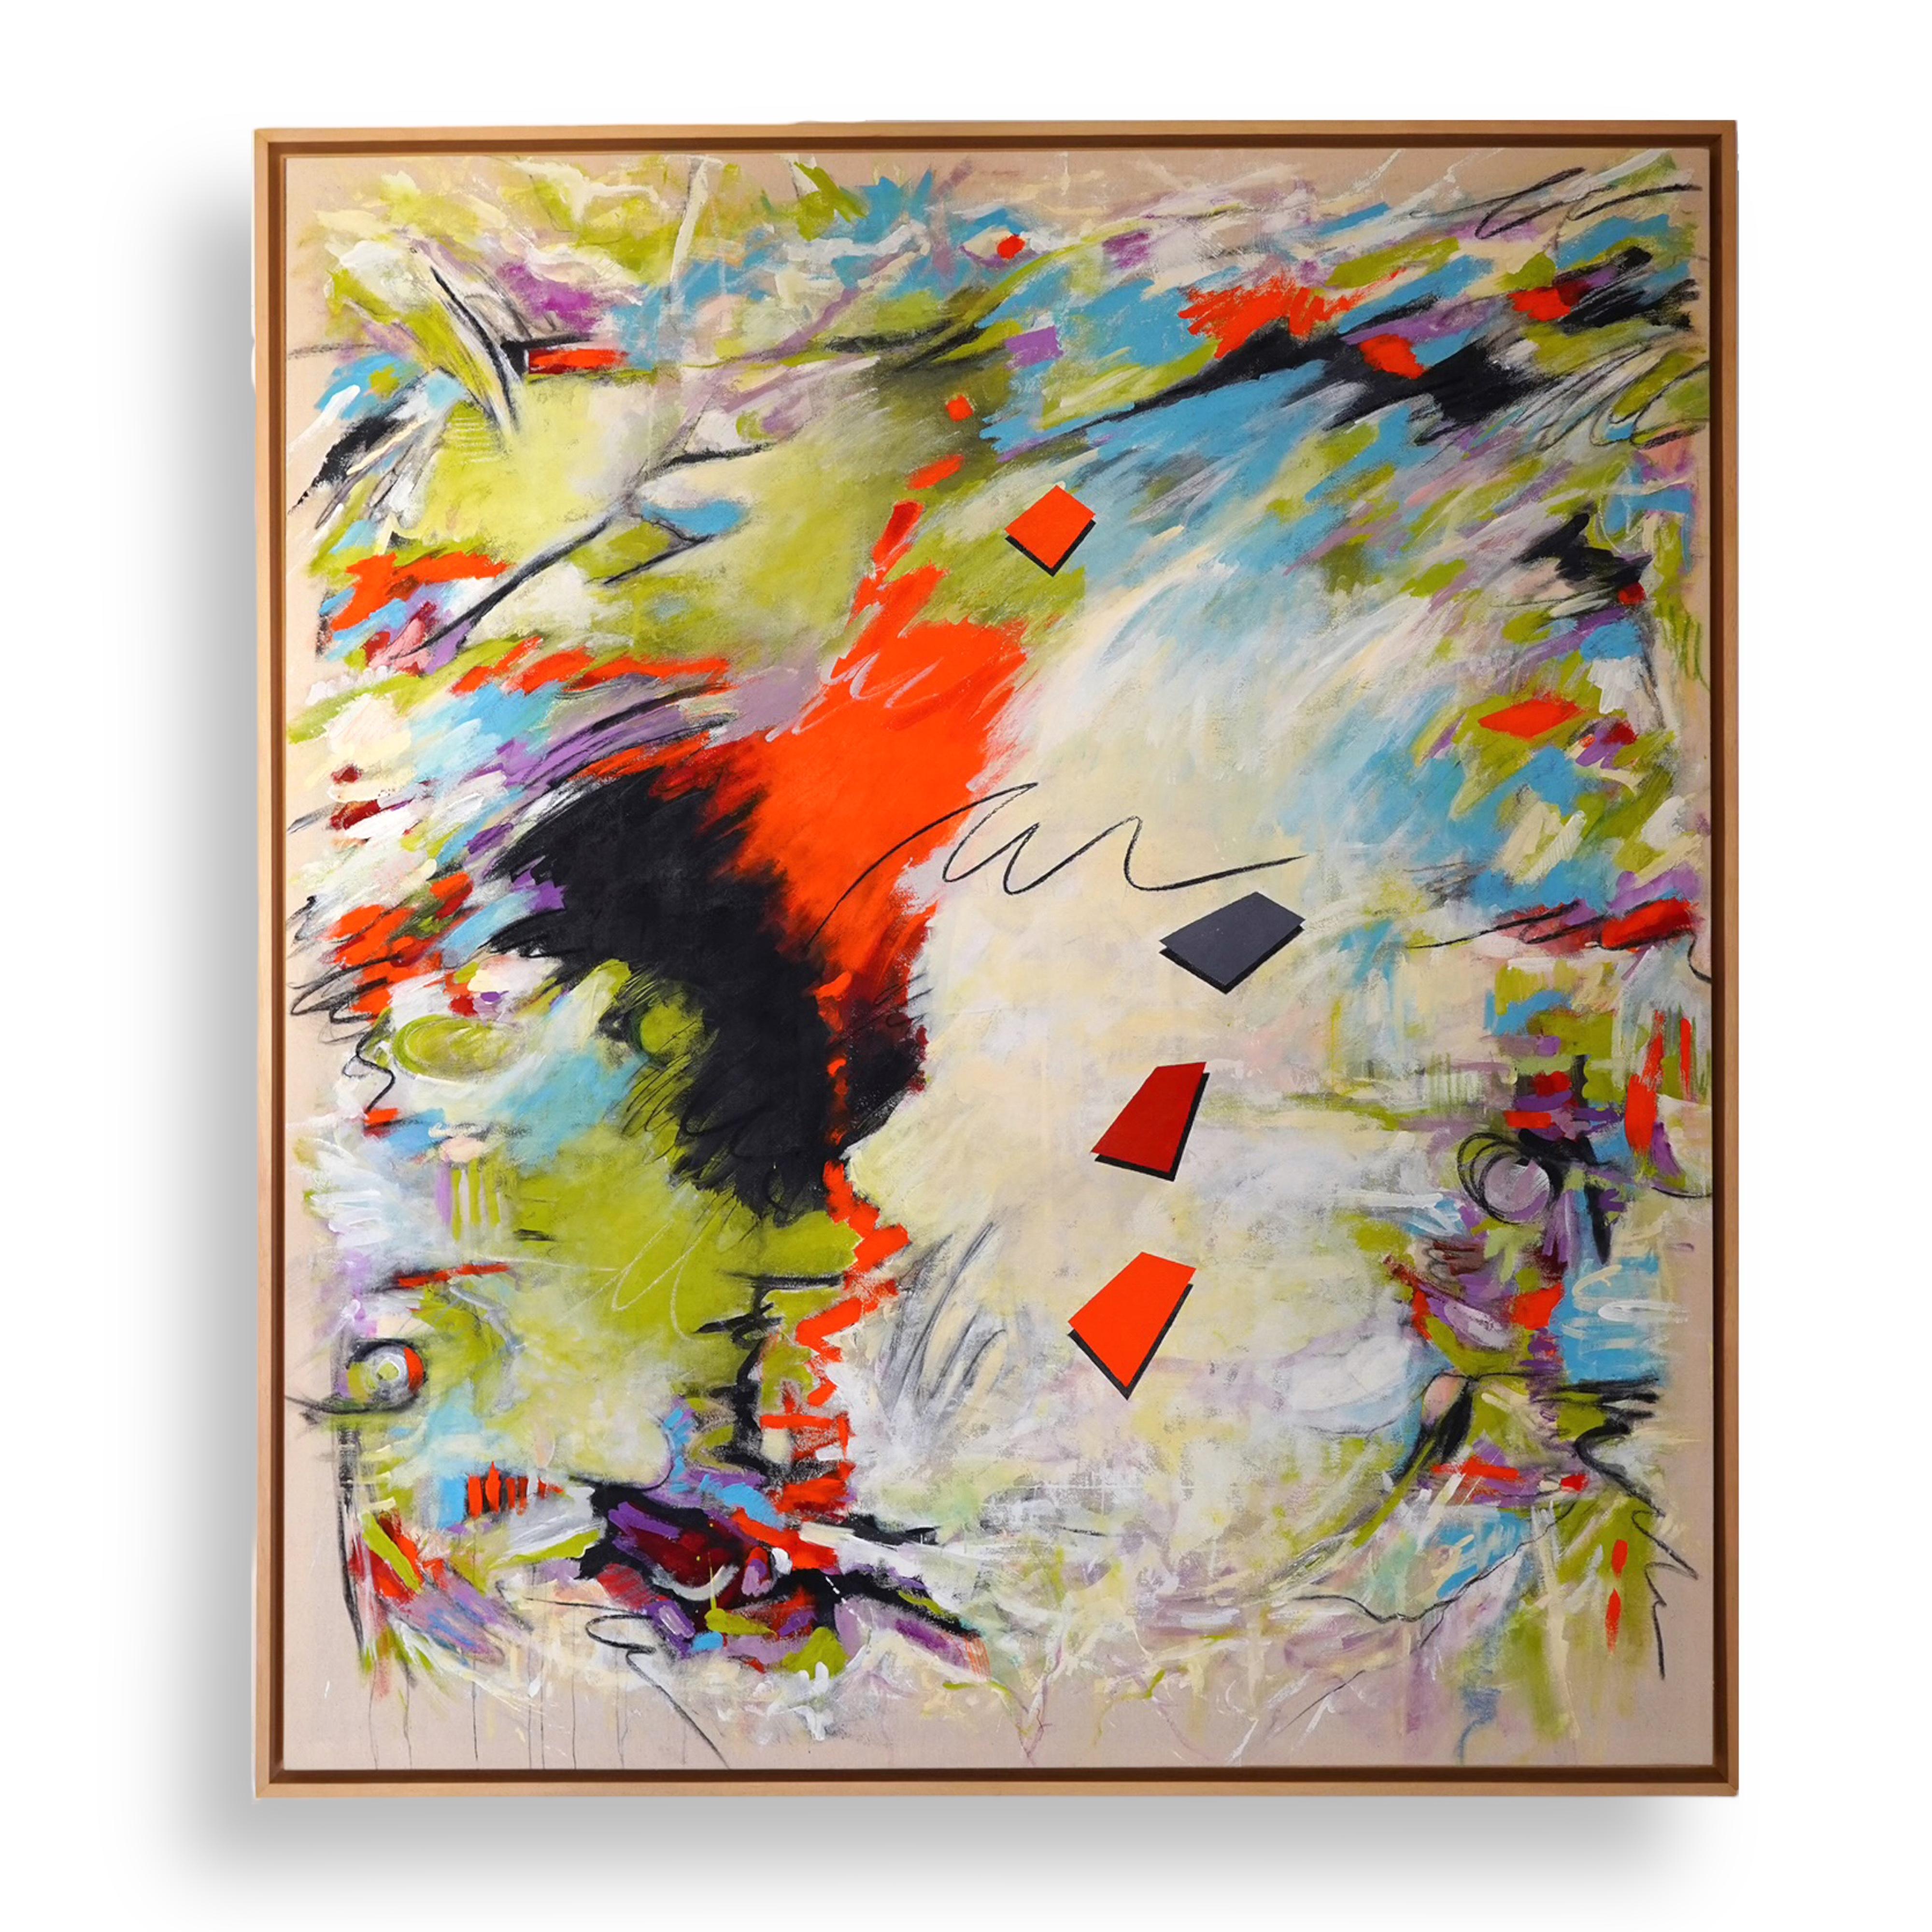 Expression abstraite I. Colorful, Modern, M. Peinture sur toile brute encadrée